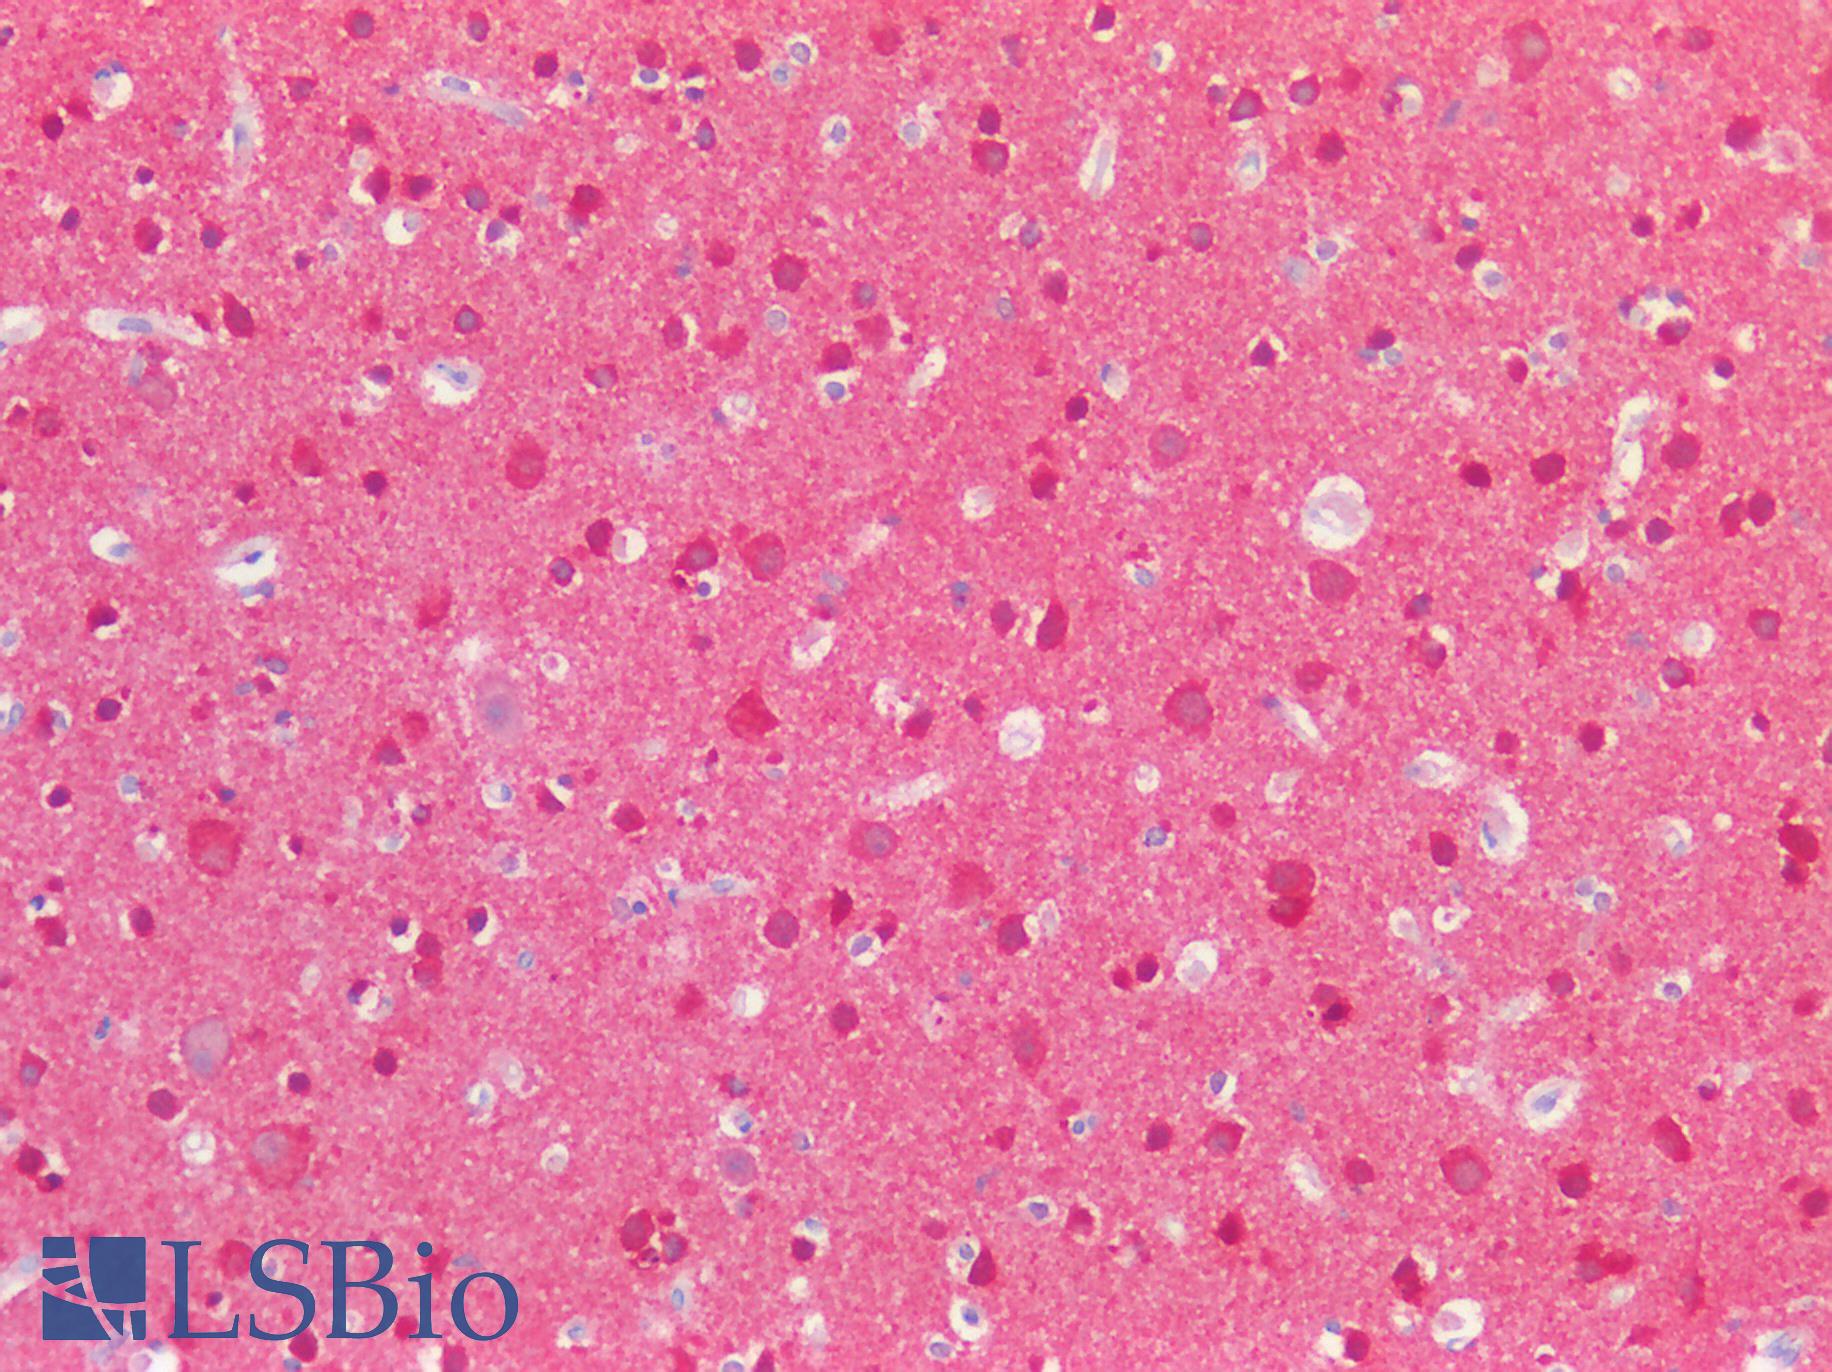 MAPT / Tau Antibody - Human Brain, Cortex: Formalin-Fixed, Paraffin-Embedded (FFPE)